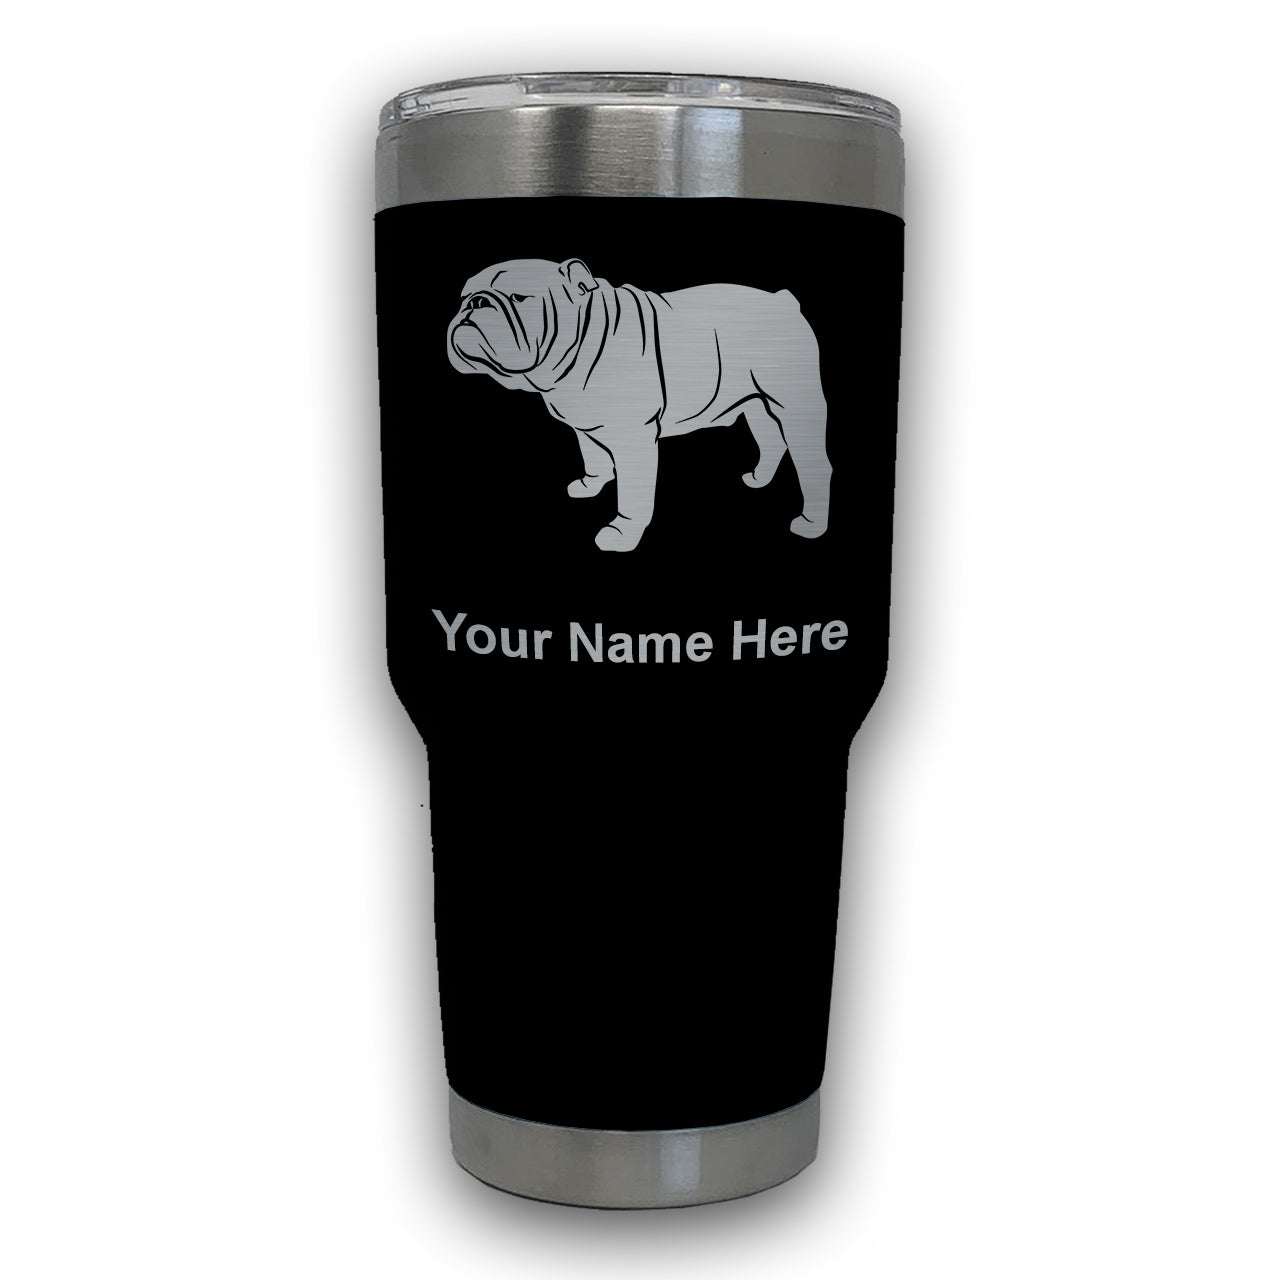 LaserGram 30oz Tumbler Mug, Bulldog Dog, Personalized Engraving Included